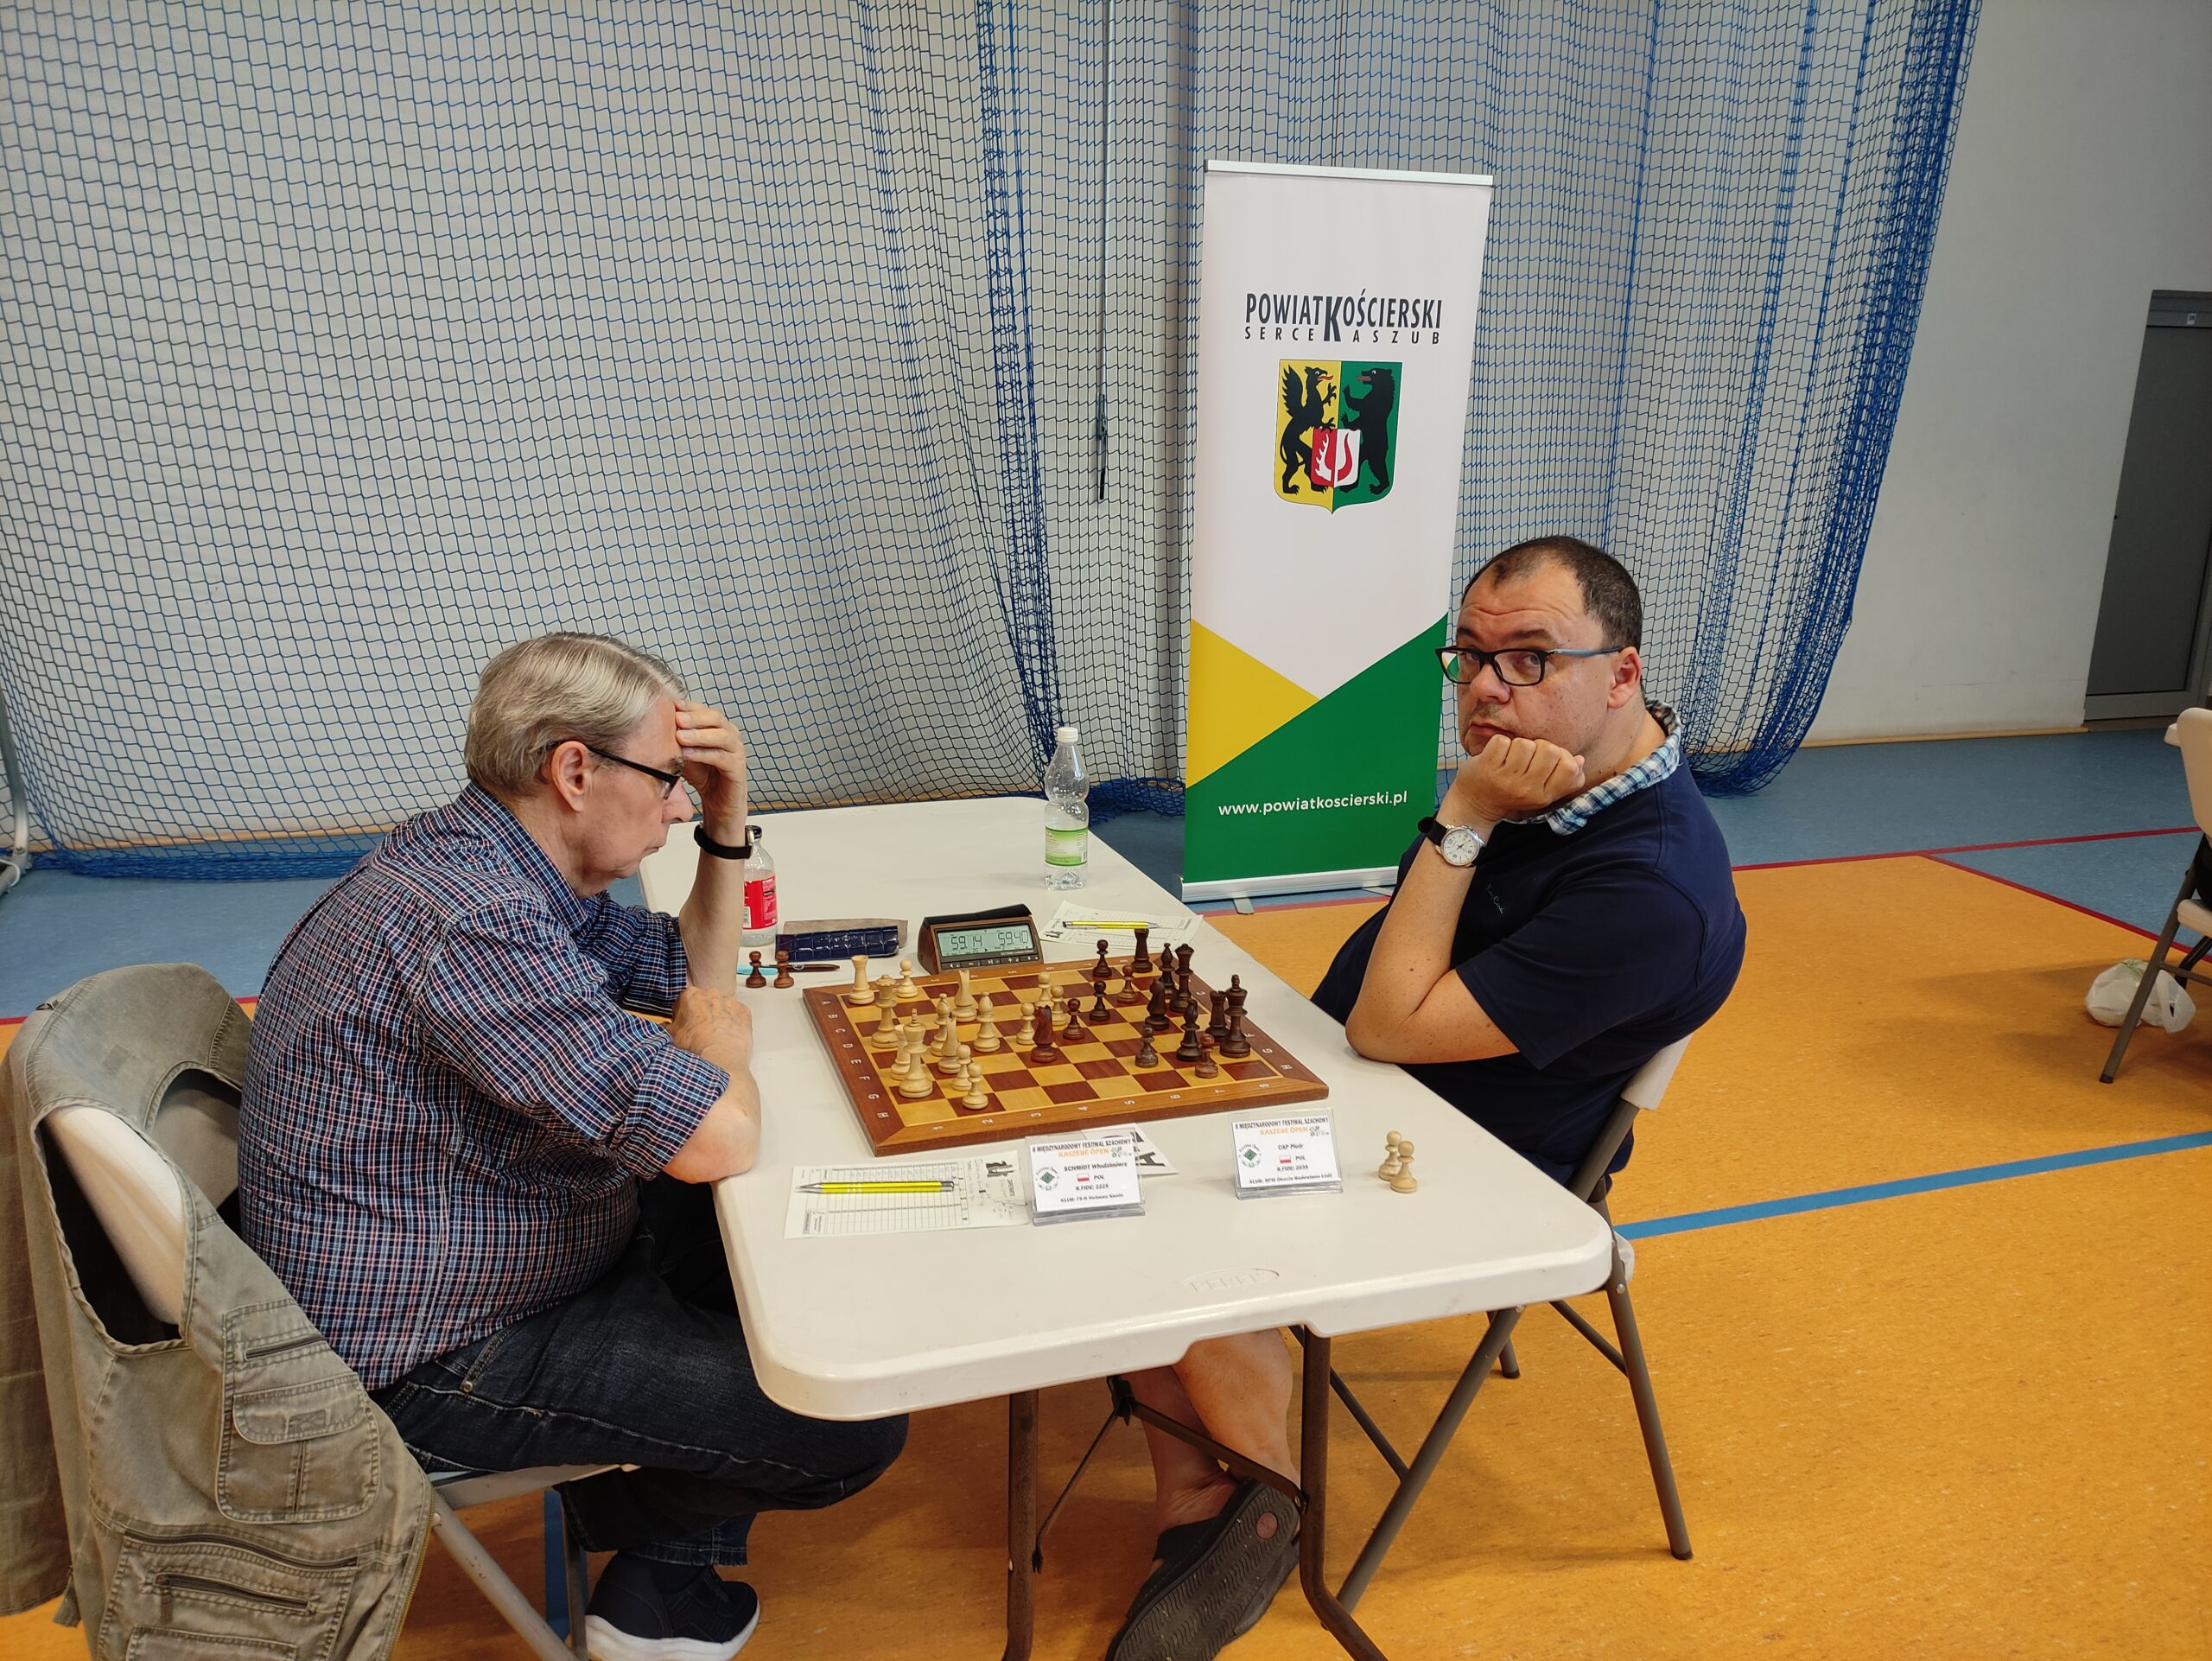 Arcymistrz szachowy Włodzimierz Szmidt grający w szachy z przeciwnikiem podczas II Międzynarodowego festiwalu Kasszebe Open